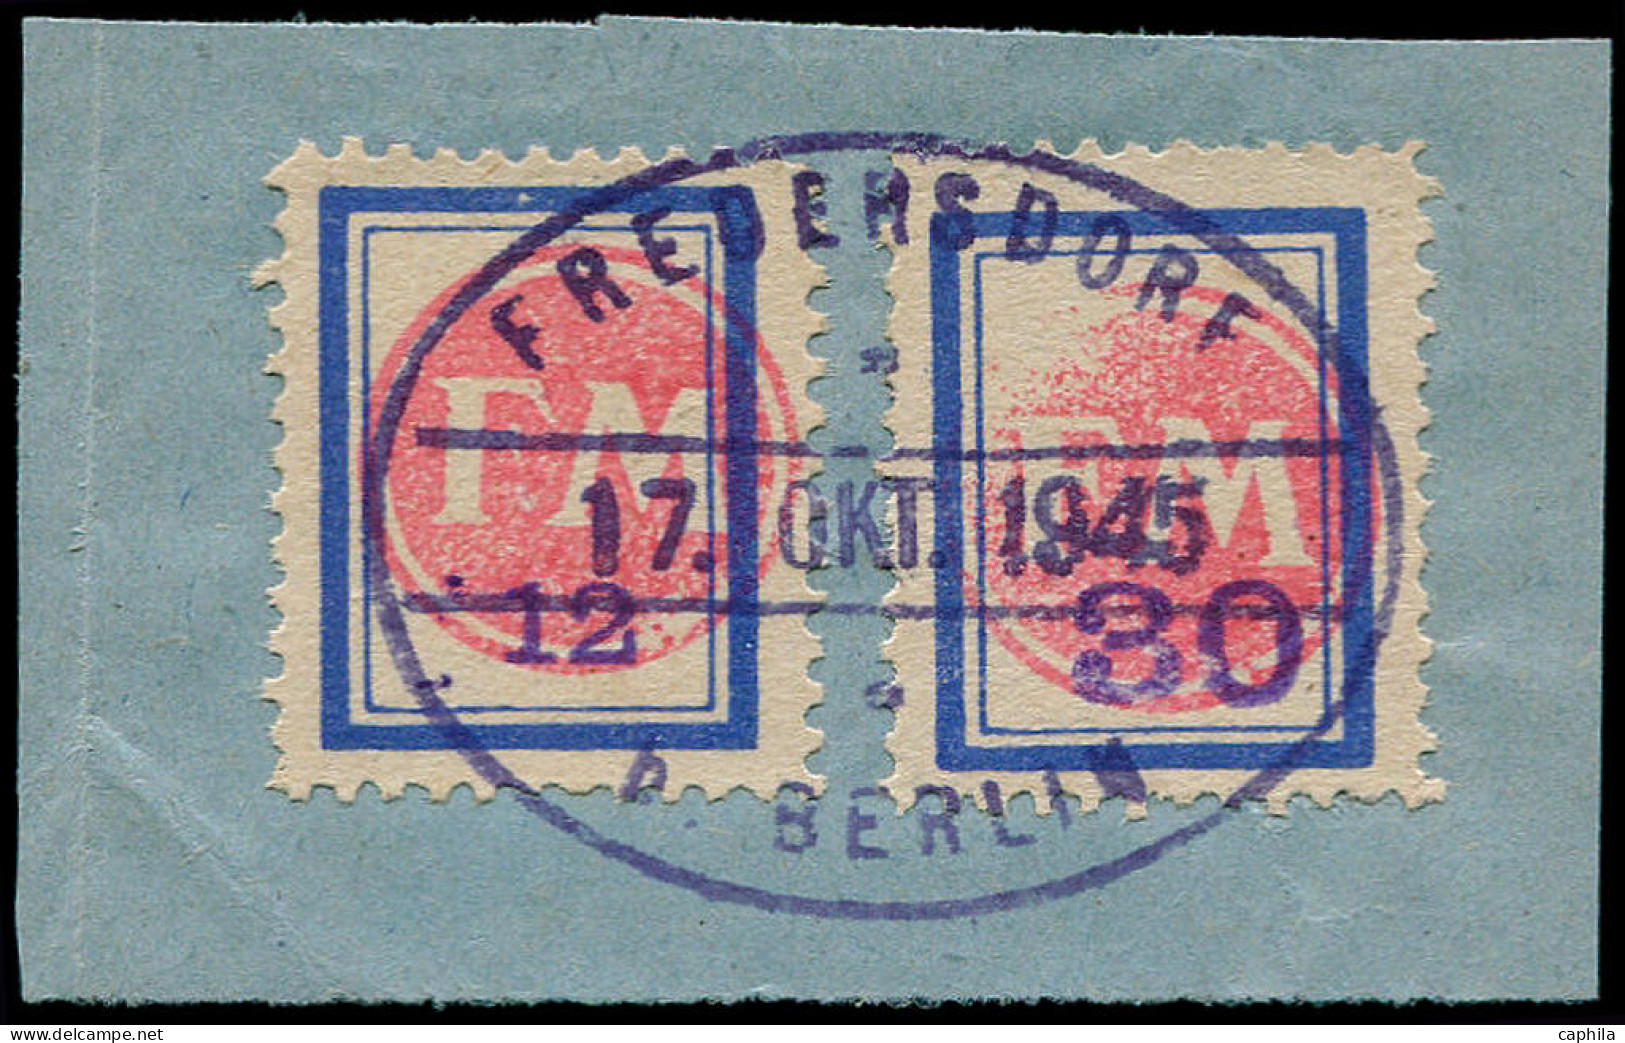 O ALLEMAGNE LOCAUX 1945 FREBERSDORF - Poste - Michel SP 202 + 204 Sur Un Petit Fragment, Signés Zierer (tirage 120) - Other